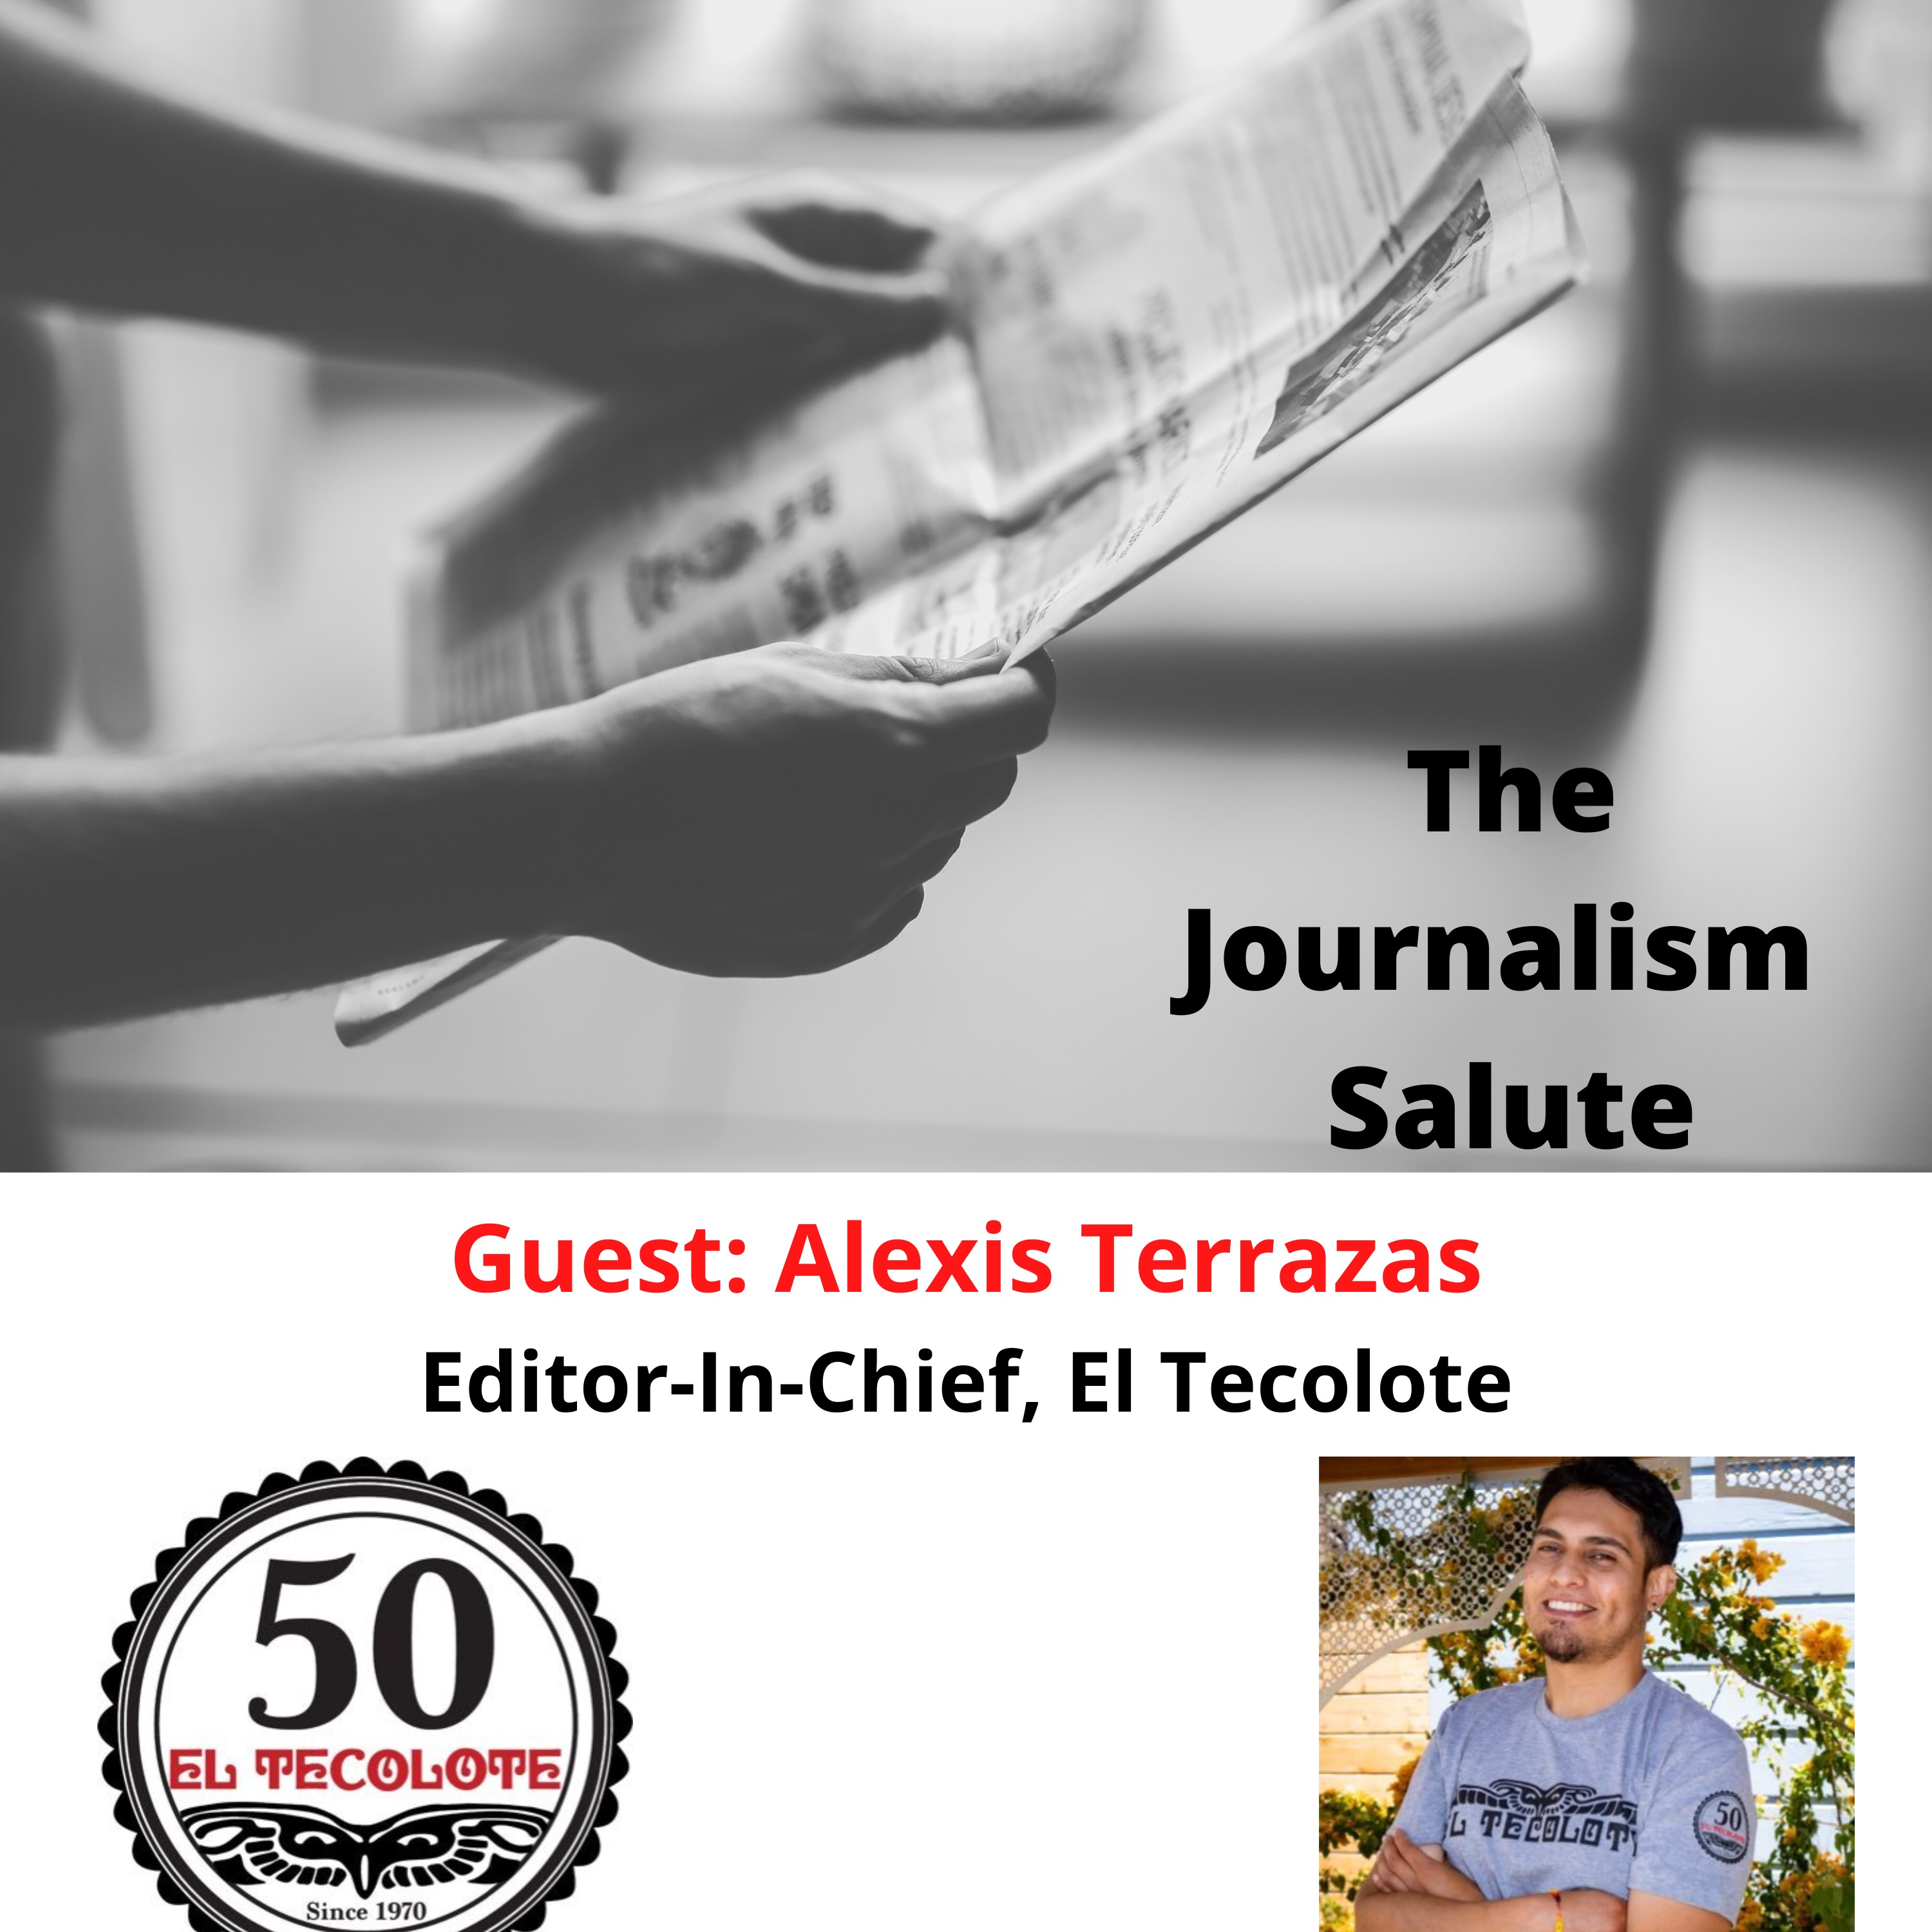 Alexis Terrazas, Editor-In-Chief, El Tecolote